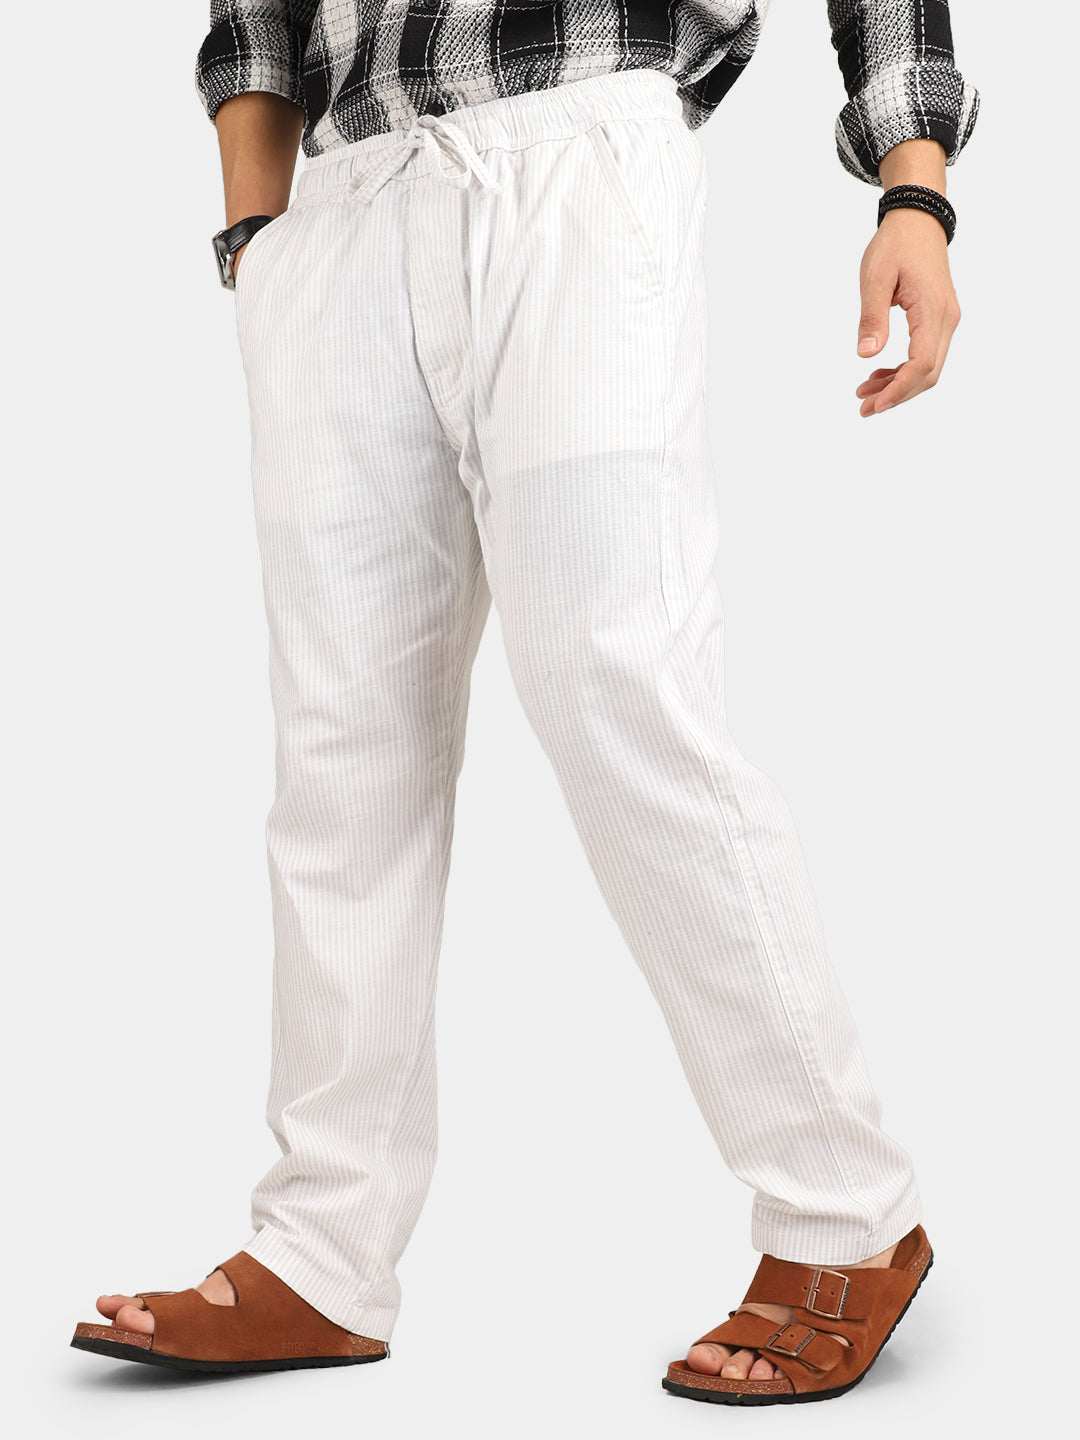 Arabic Linen White Trouser